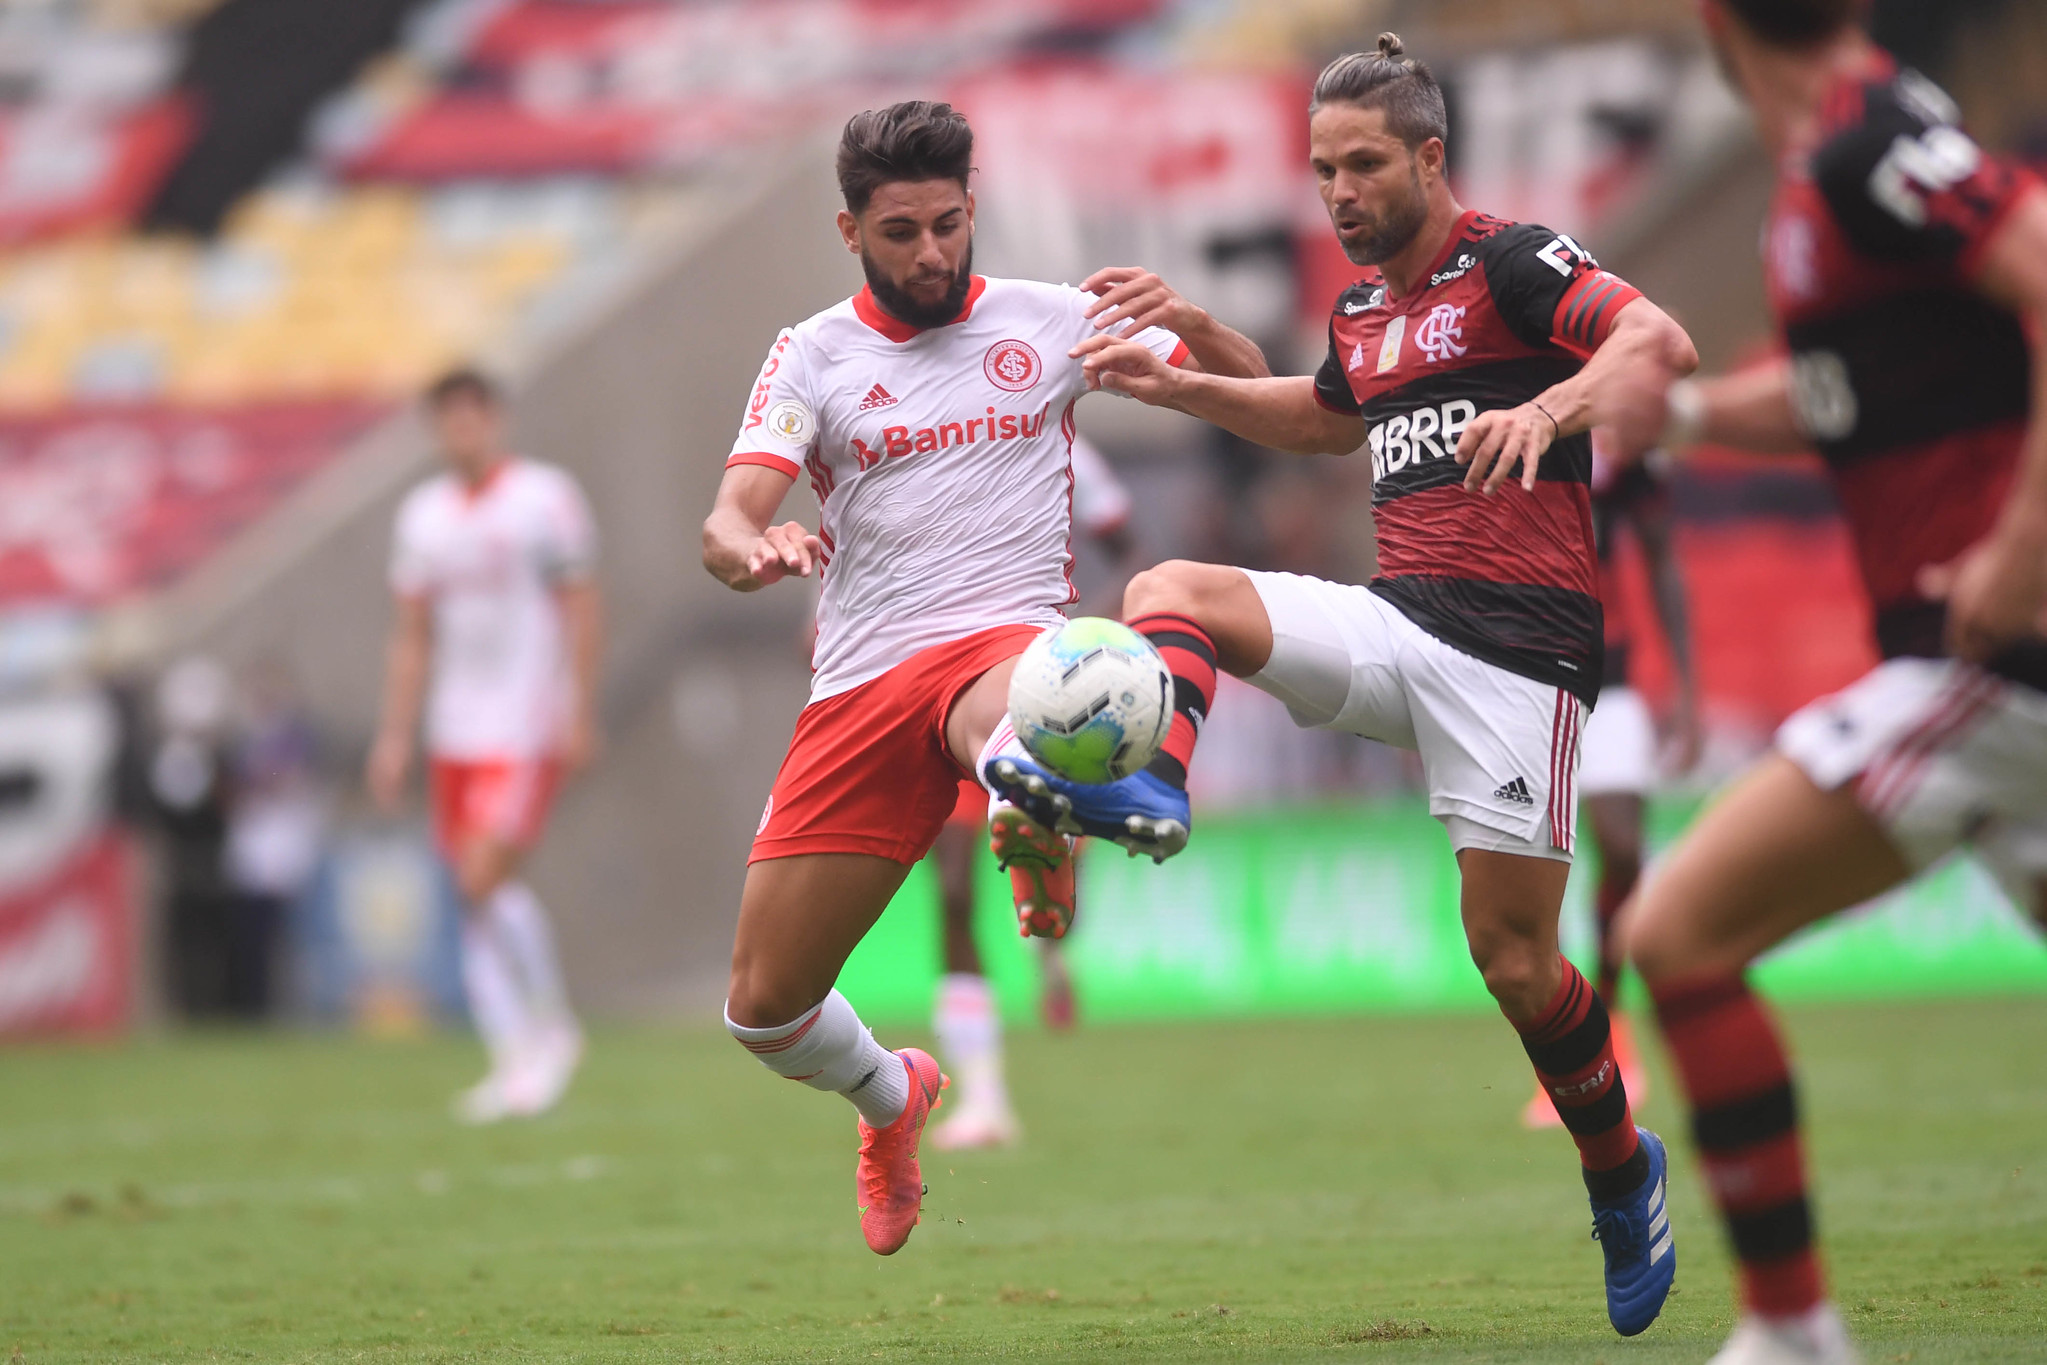 Em momentos opostos na temporada, Inter e Flamengo se enfrentam pelo Campeonato Brasileiro